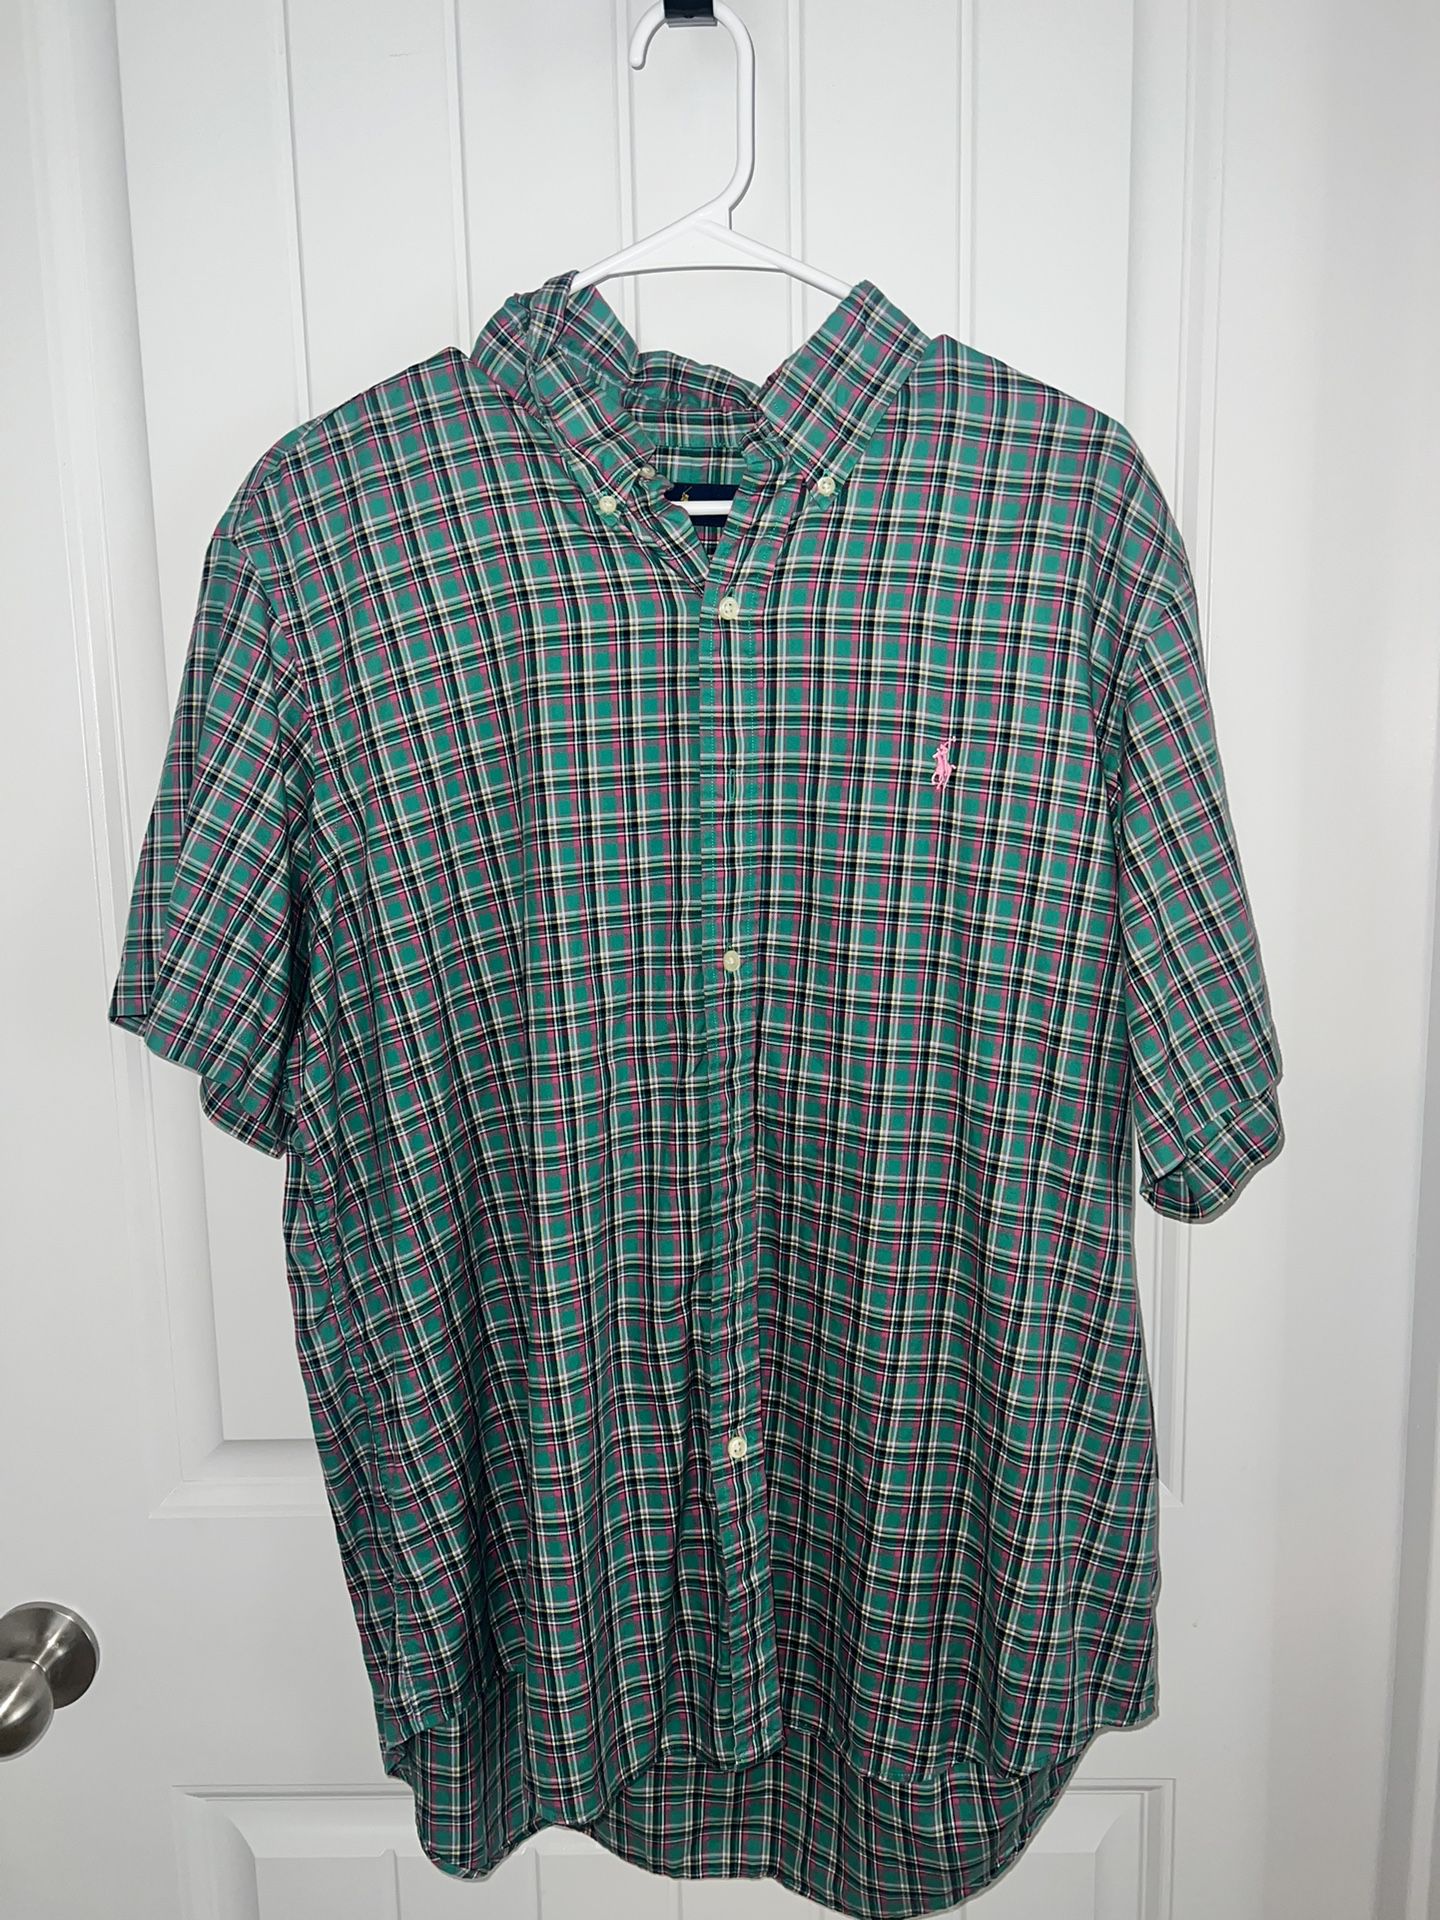 Polo Ralph Lauren Men’s Shirt XL